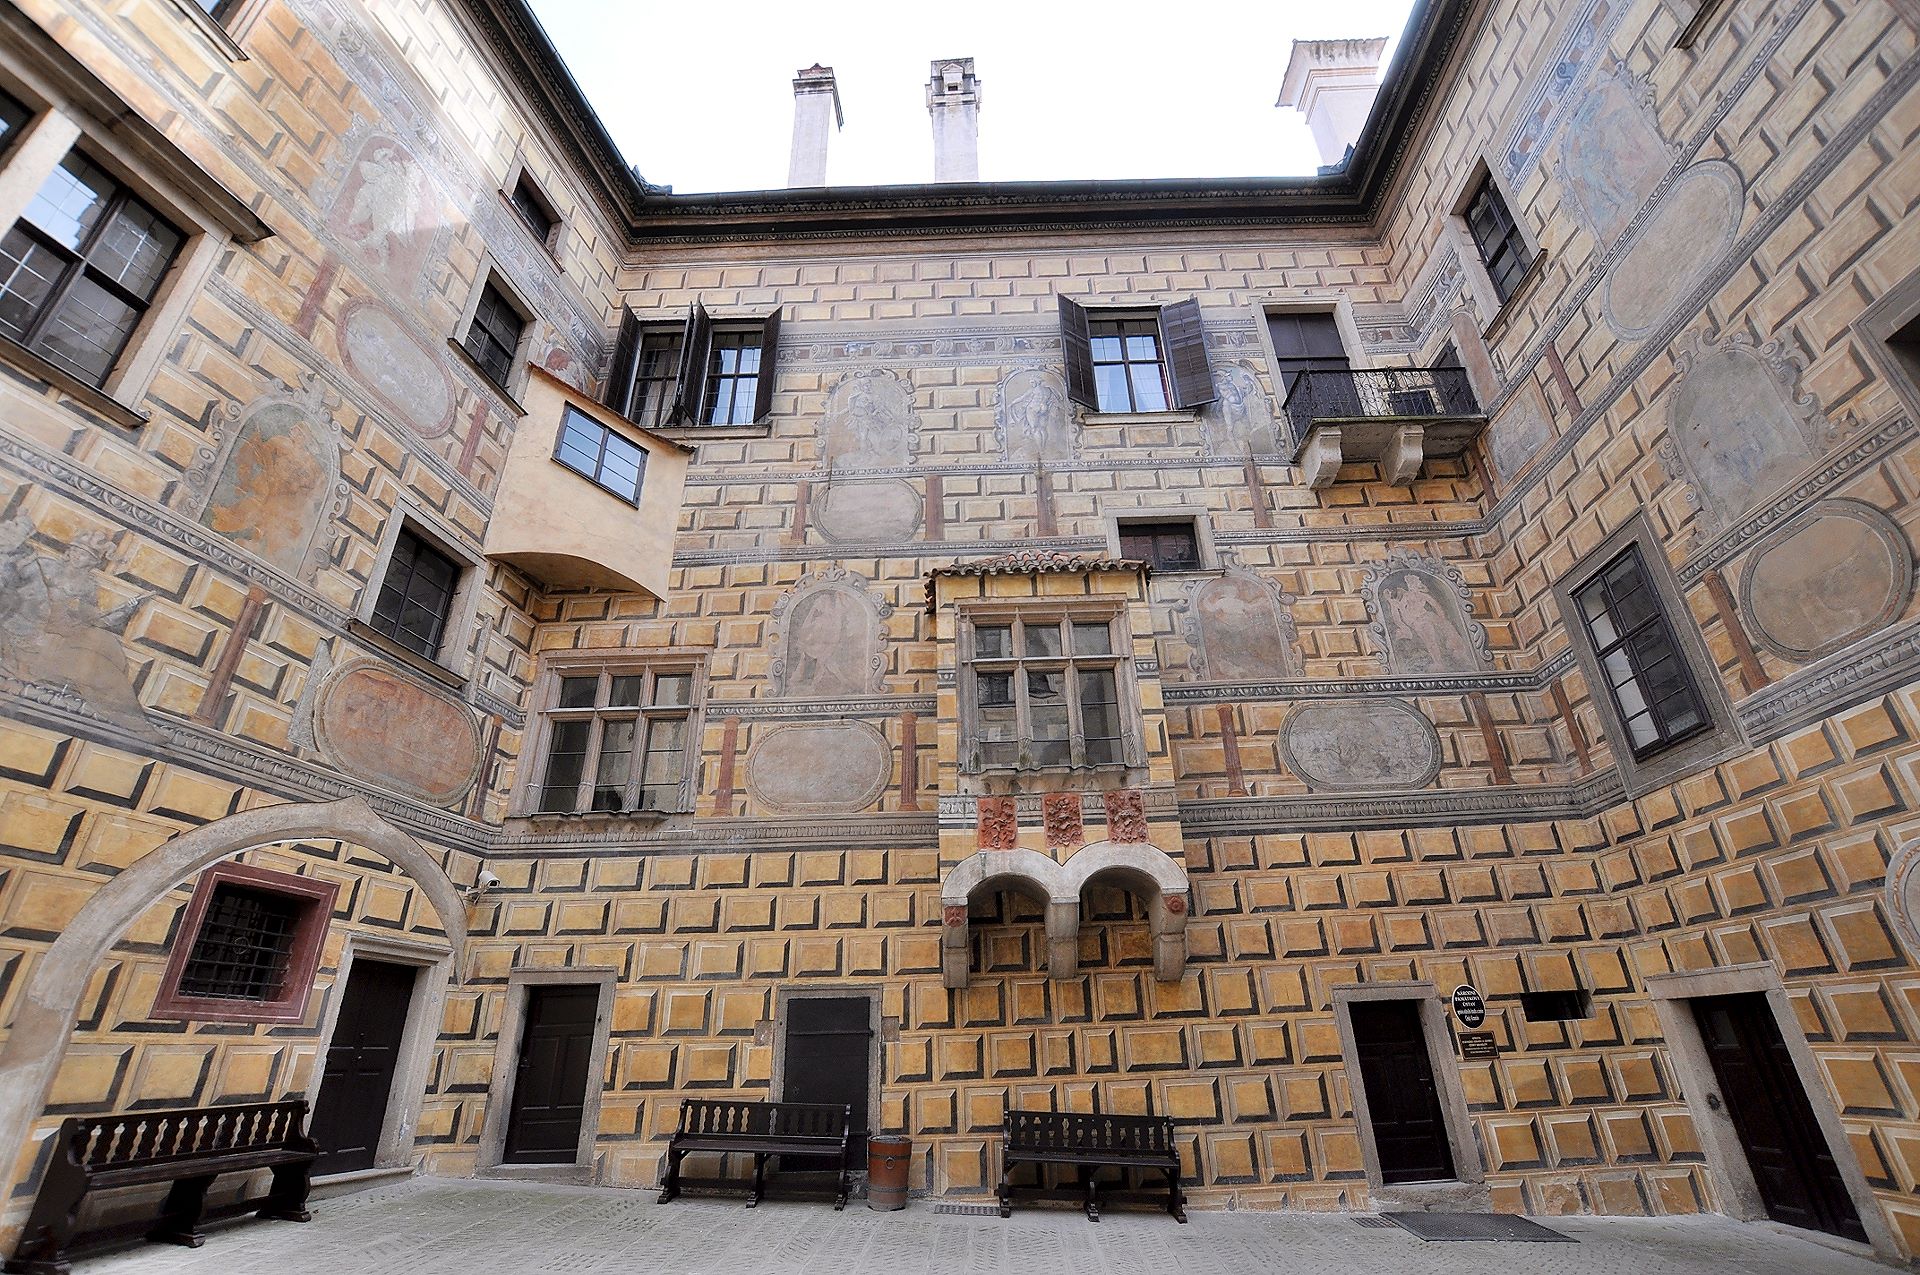 Renaissancedekor schmückt die Höfe der Burg von Krumau